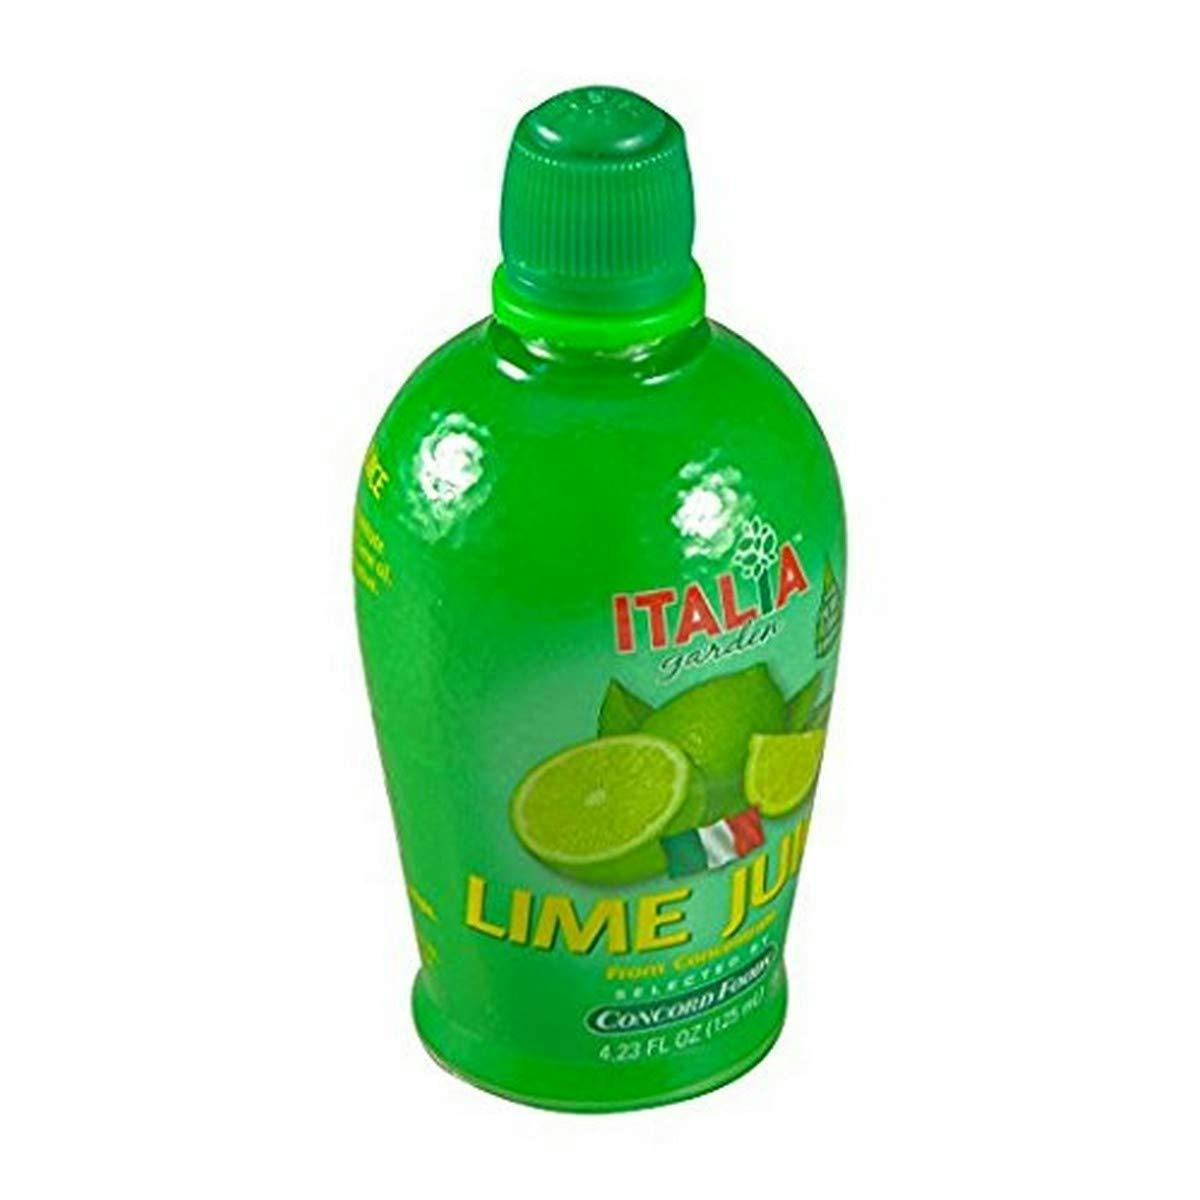 lime juice to taste